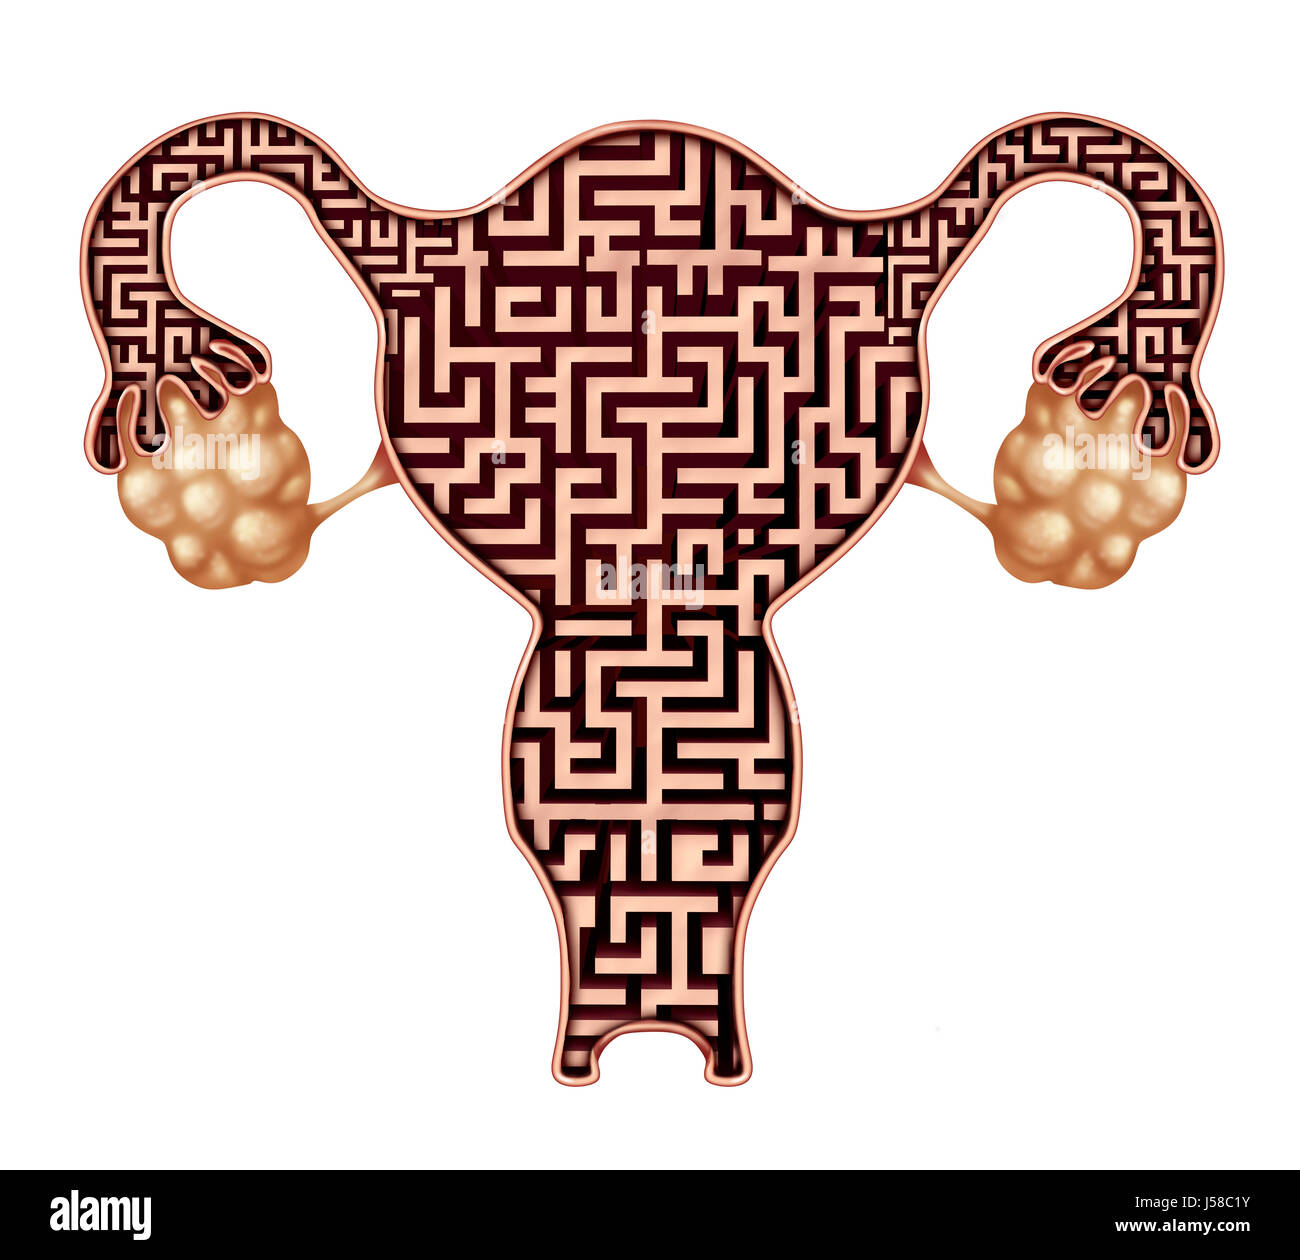 Problema di fertilità e infertilità sfida concetto medico come un utero umano conformata come un labirinto che rappresentano problemi di rimanere incinta. Foto Stock